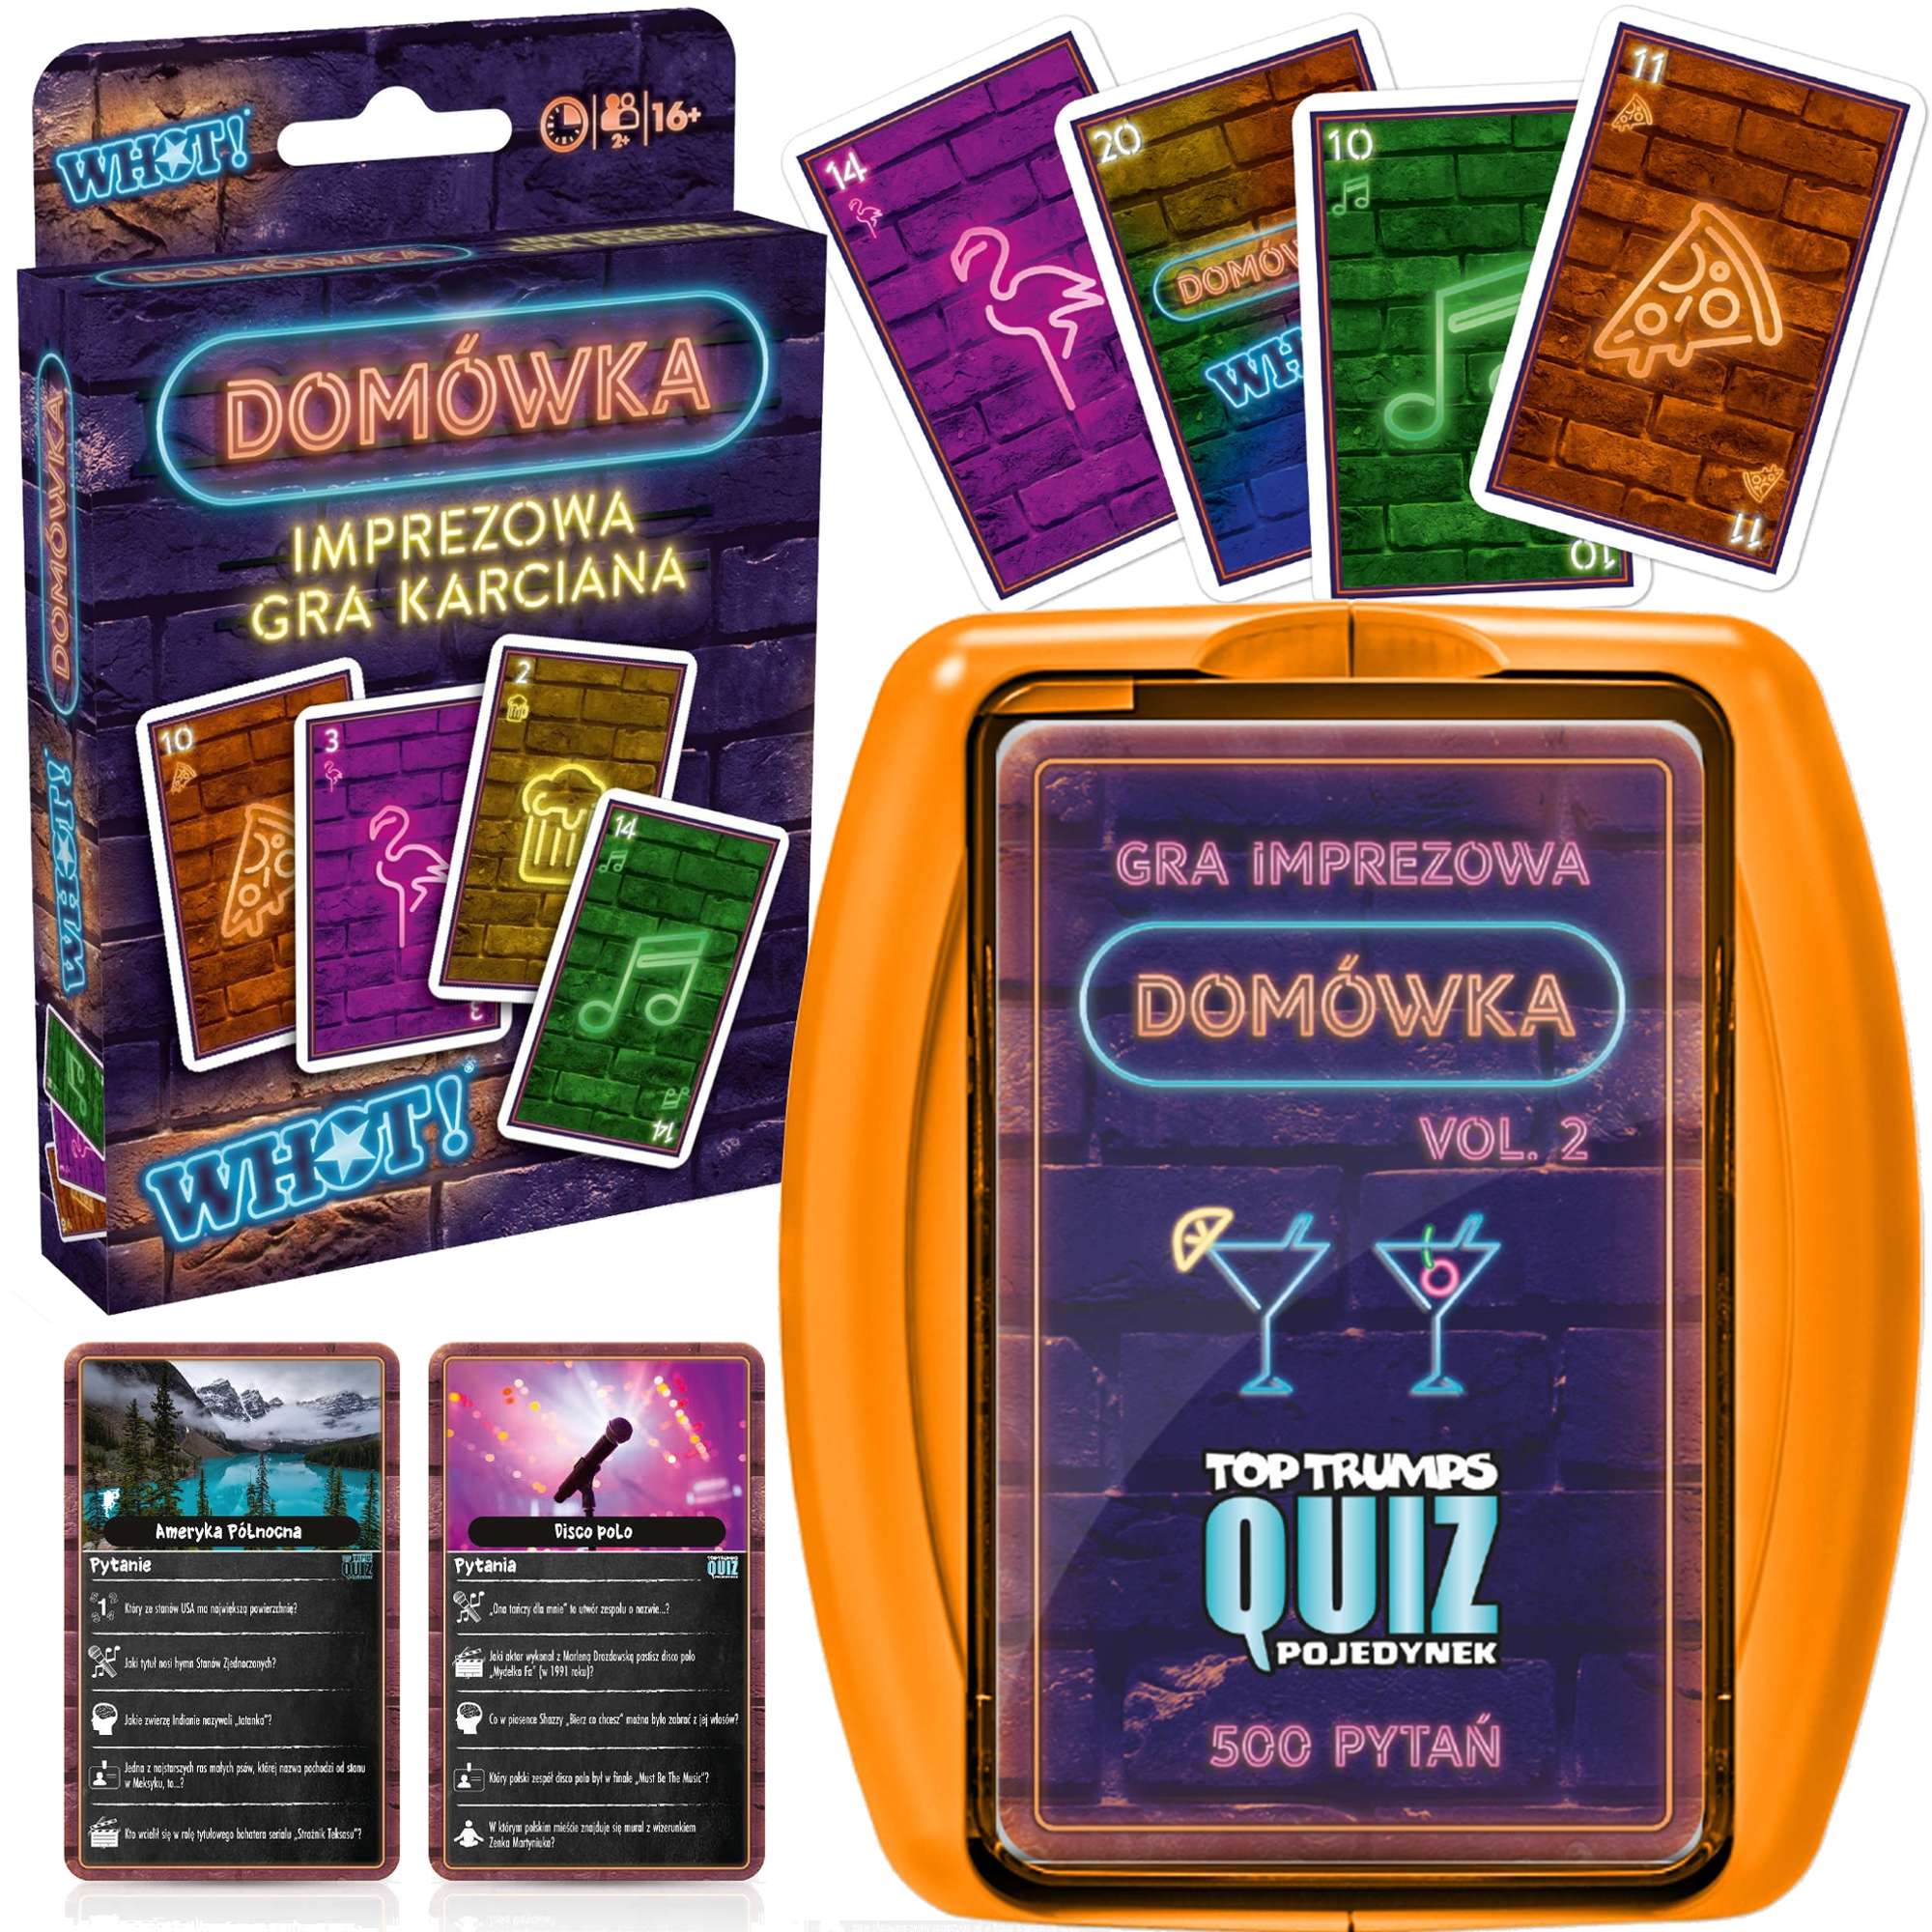 Zestaw gier Top Trumps Quiz 500 pyta Domwka + Imprezowa gra karciana dla dorosych WHOT! Domwka